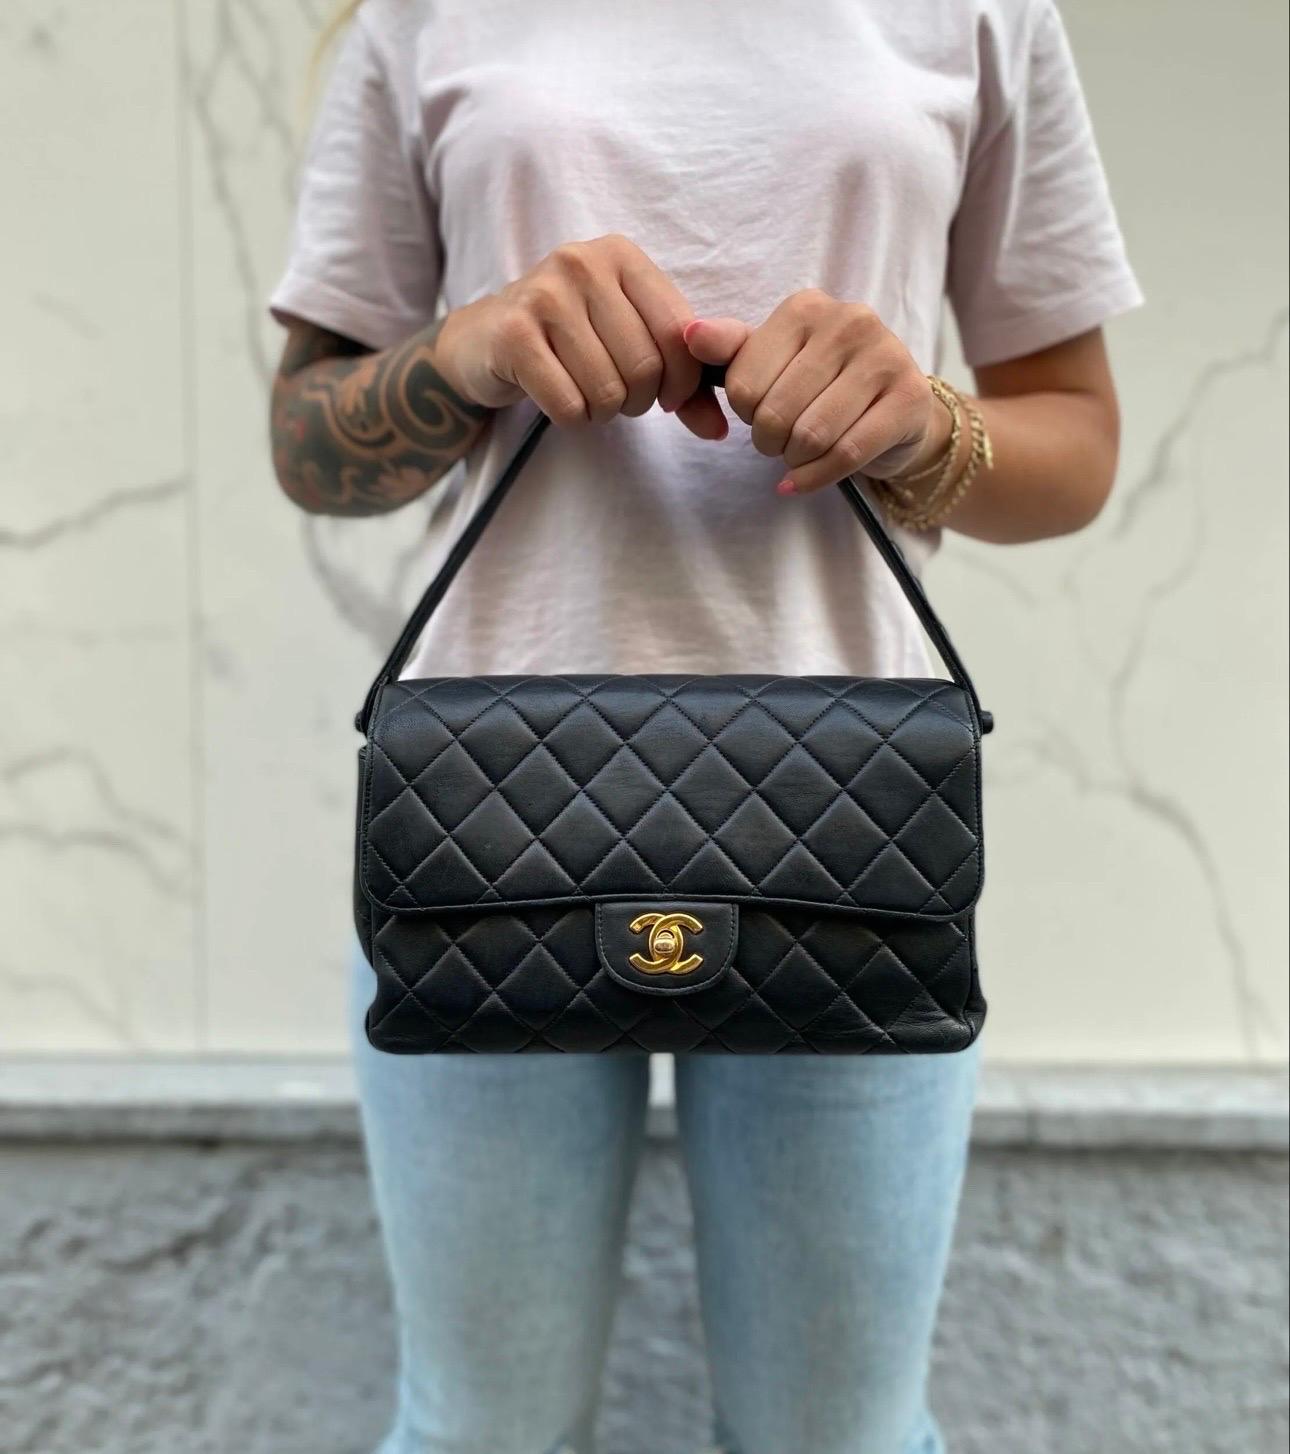 Borsa iconica di Chanel modello 2.55 Double Face in pelle trapuntata nera con hardware dorati. Predispone di due patte, una sulla parte anteriore e una sulla parte posteriore, entrambe munite di chiusura a girello ‘CC’. La borsa è suddivisa in due